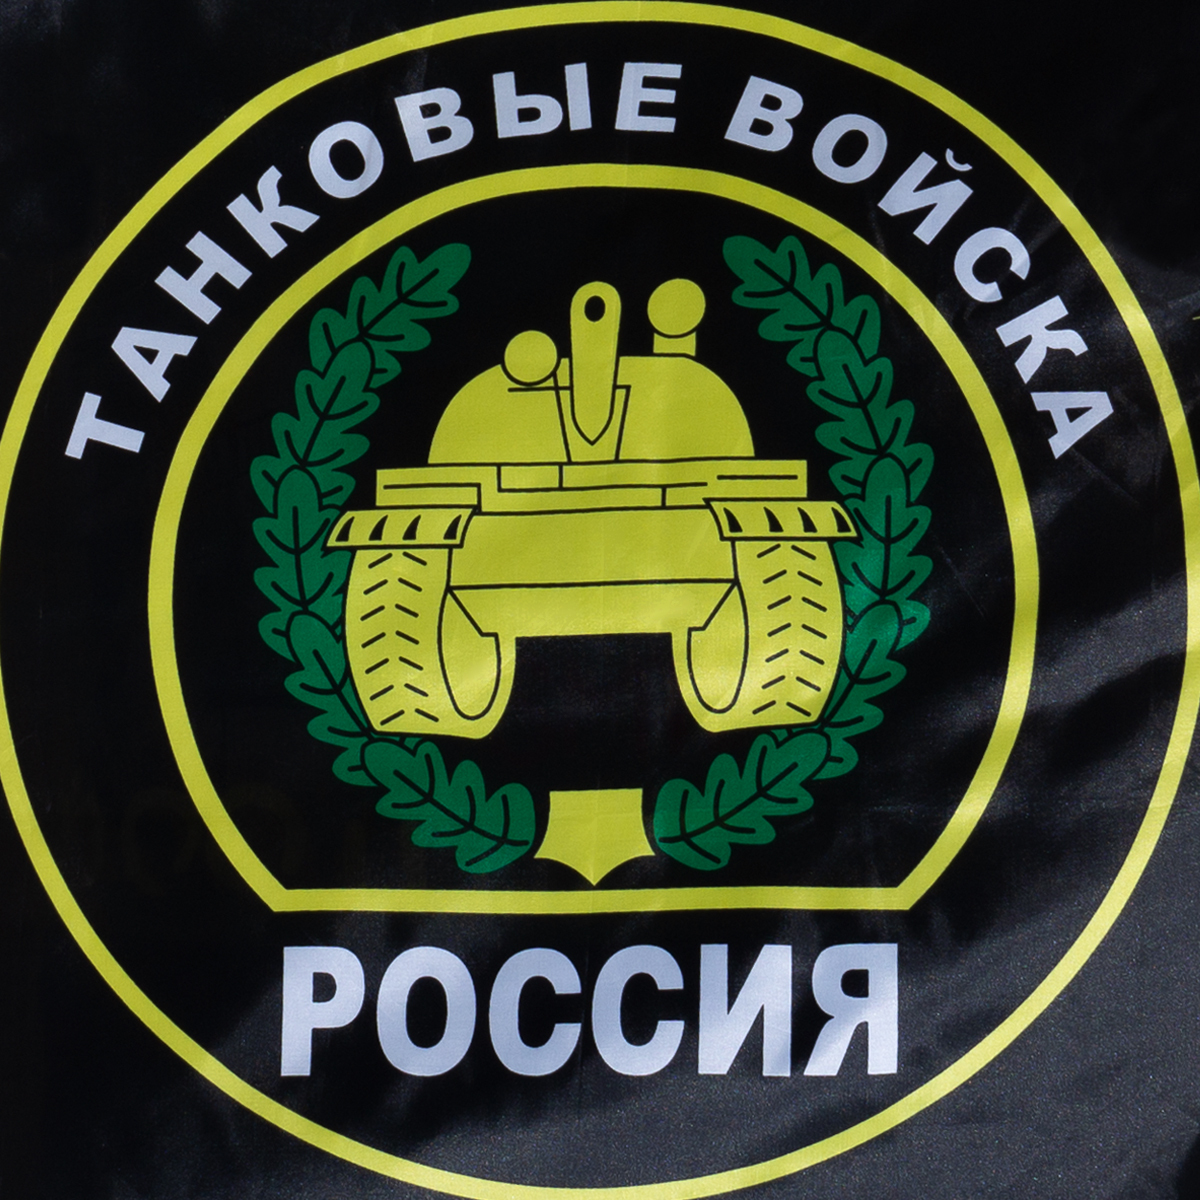 Флаг танковые войска россии фото